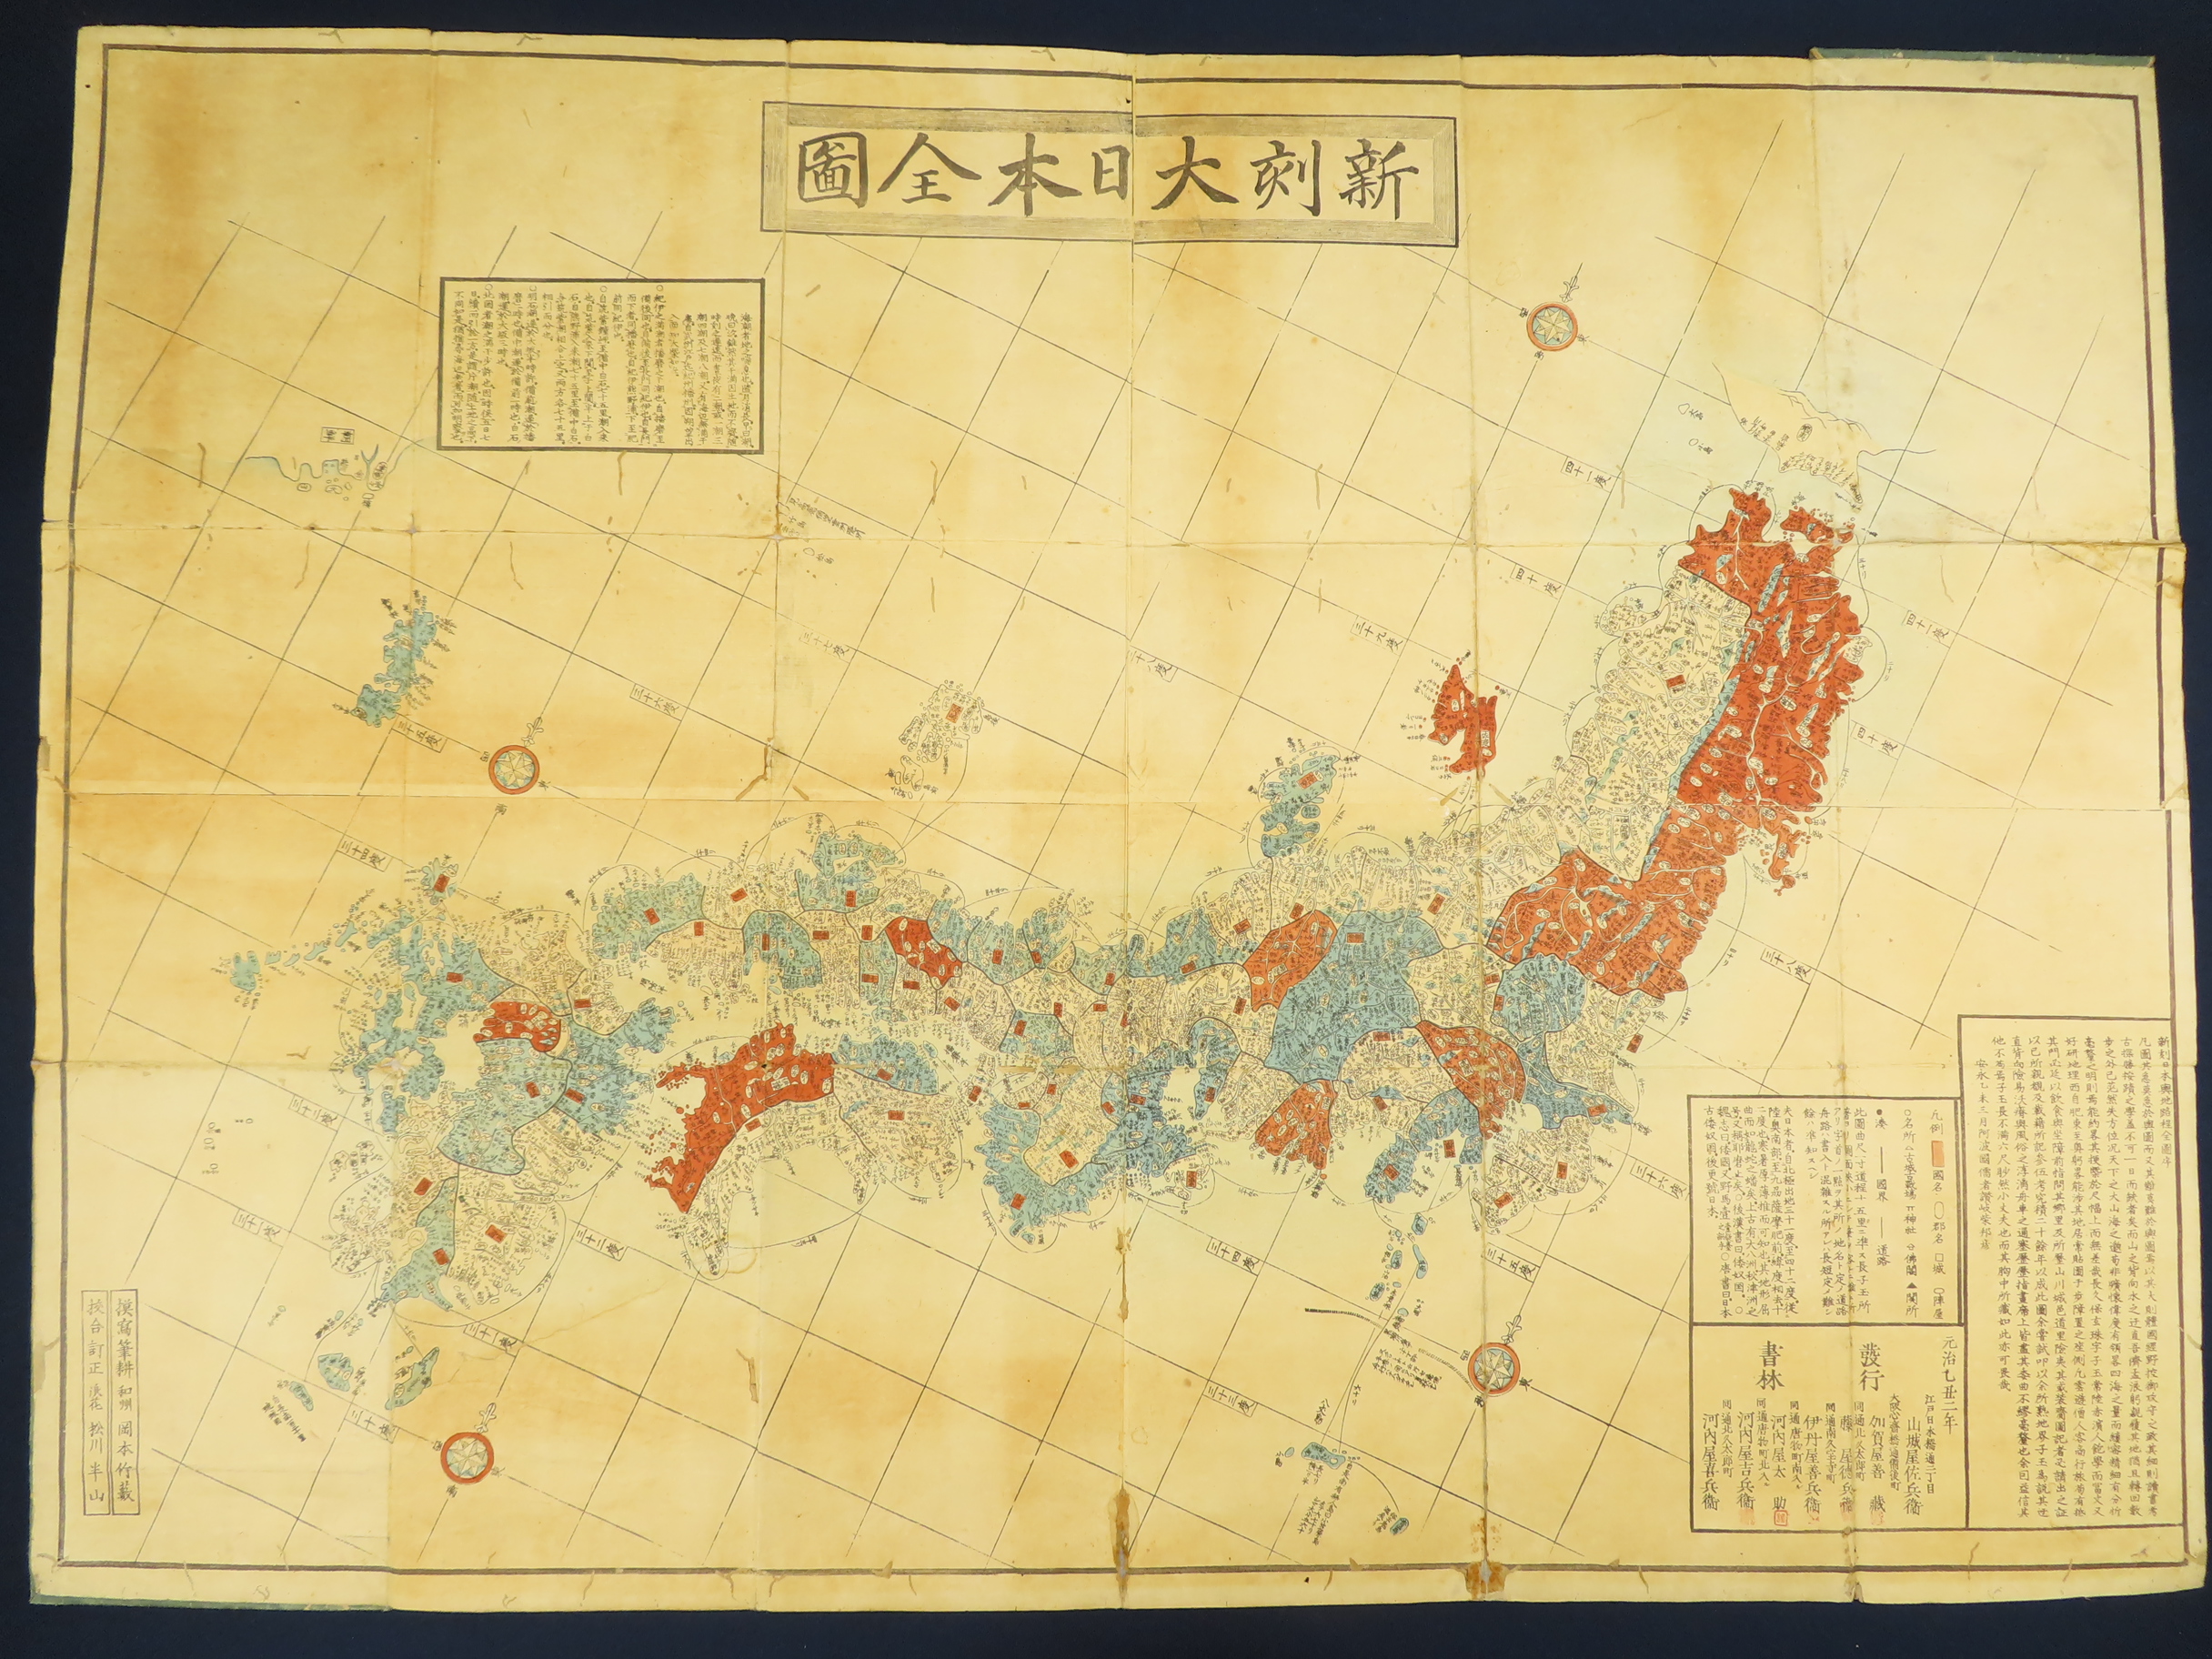 神戸 古本買取 古書出張買取 朝鮮 竹島 蝦夷 古地図